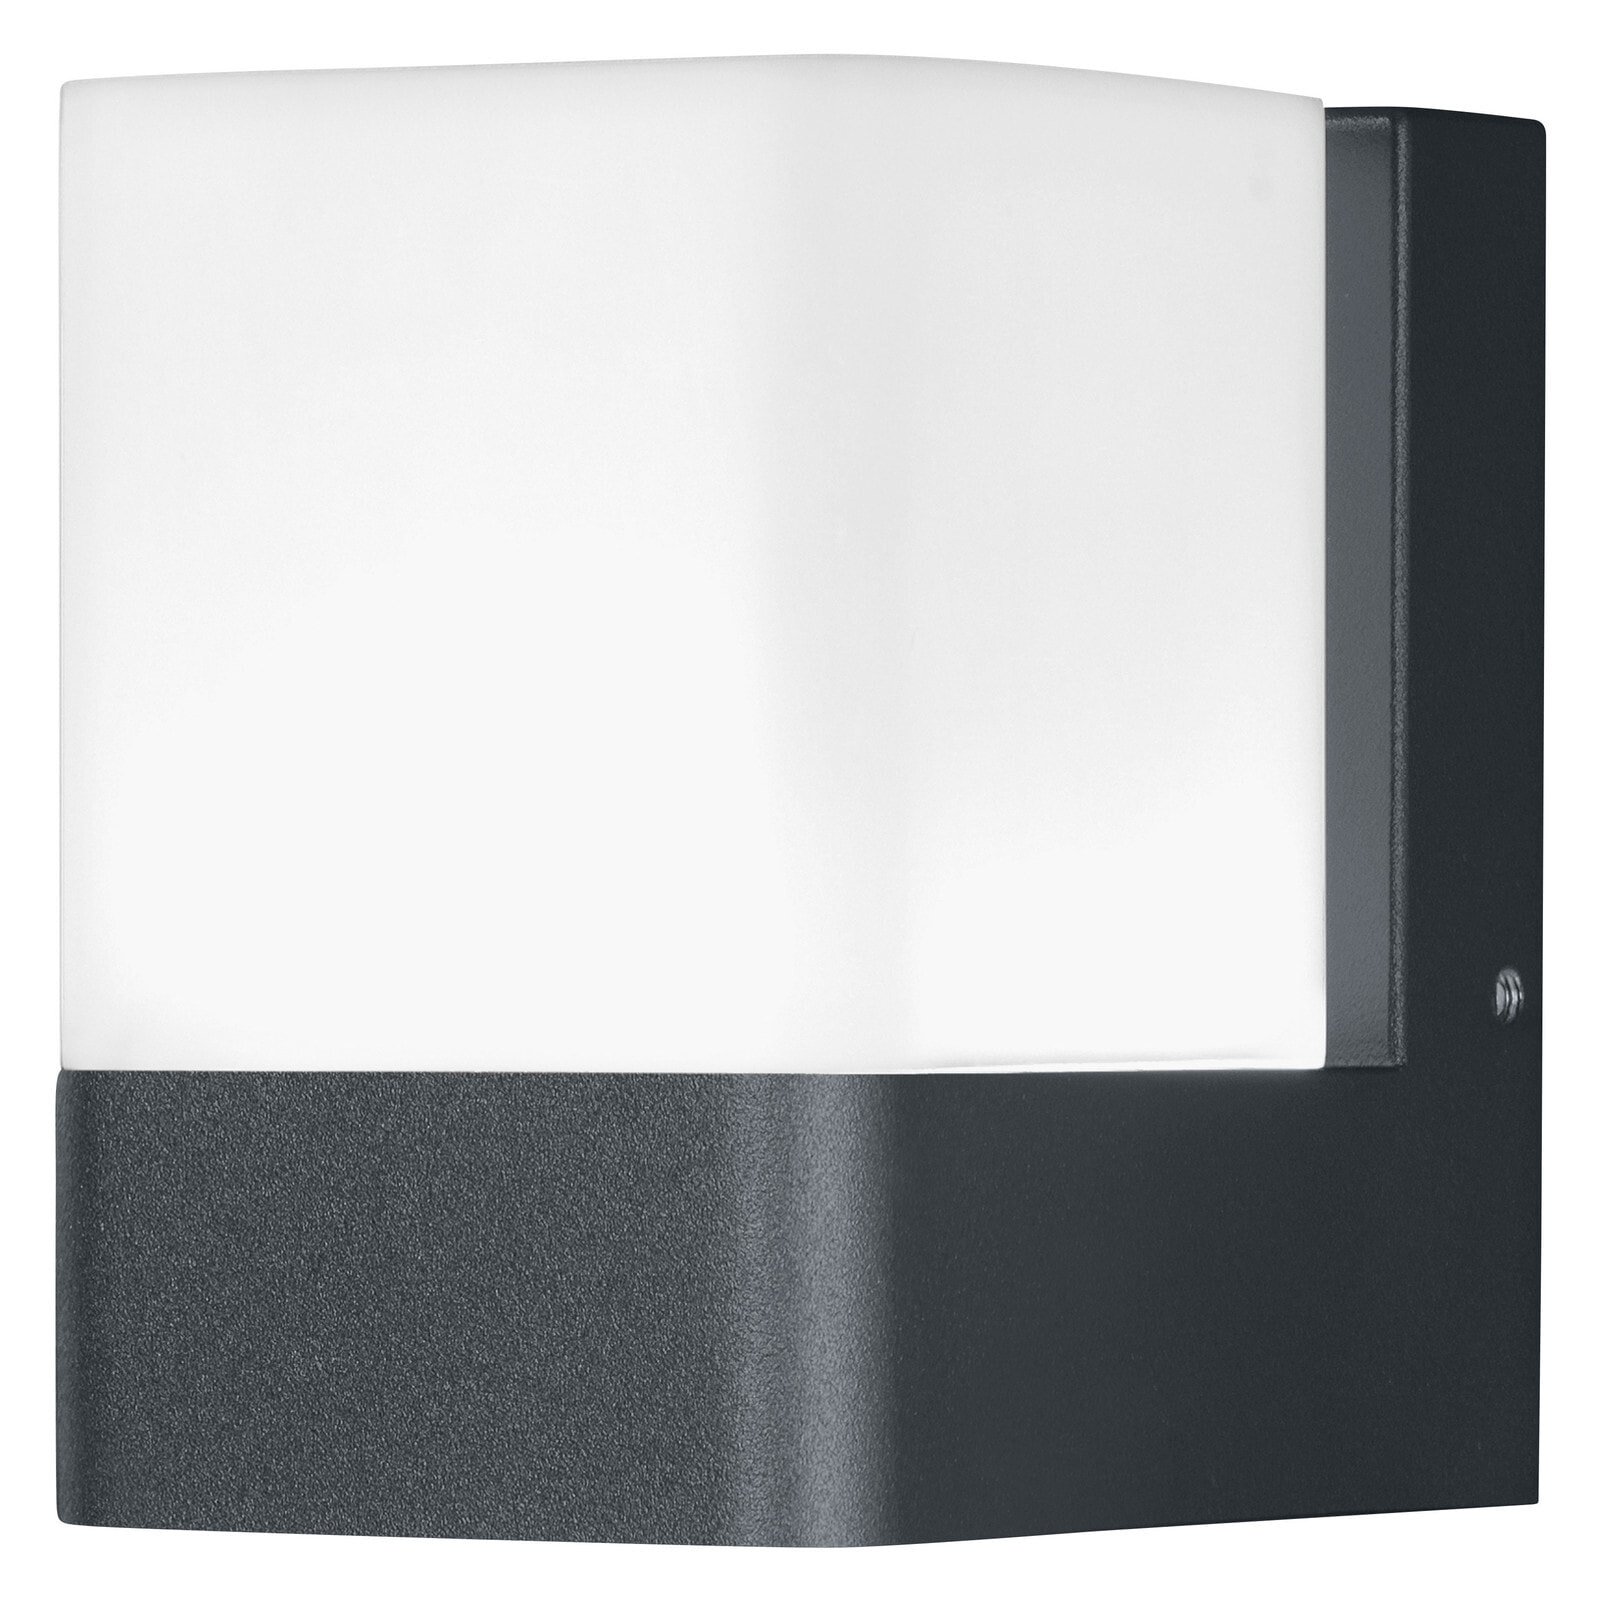 478077 - Smart wall light - Light grey - Wi-Fi - 3000 K - 950 lm - 315°